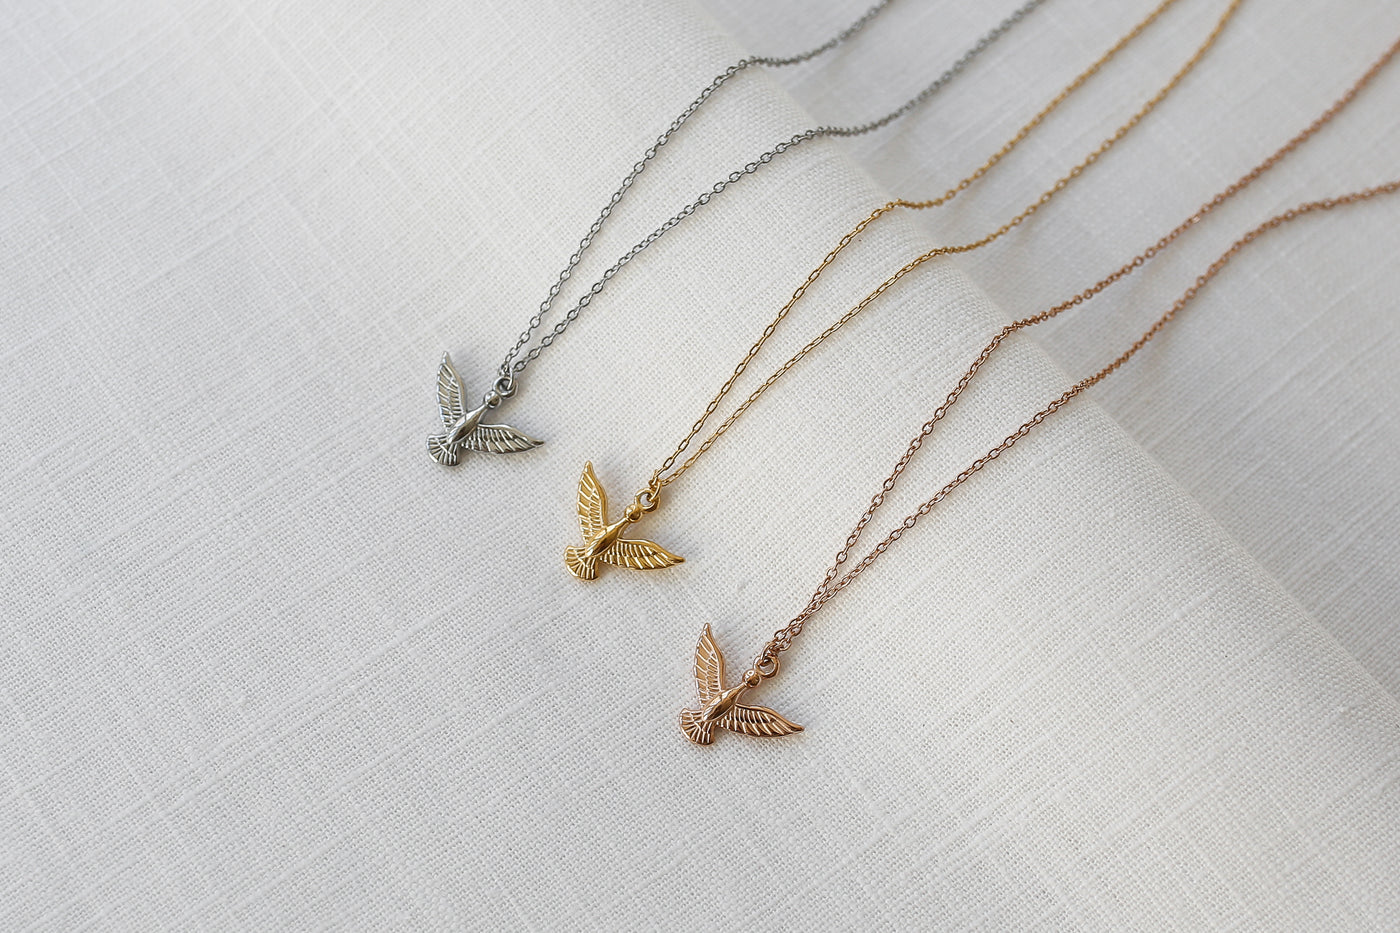 Drei Adler Anhänger Ketten in Silber, Gold und Rosegold ausgebreitet auf Leinen Stoff.